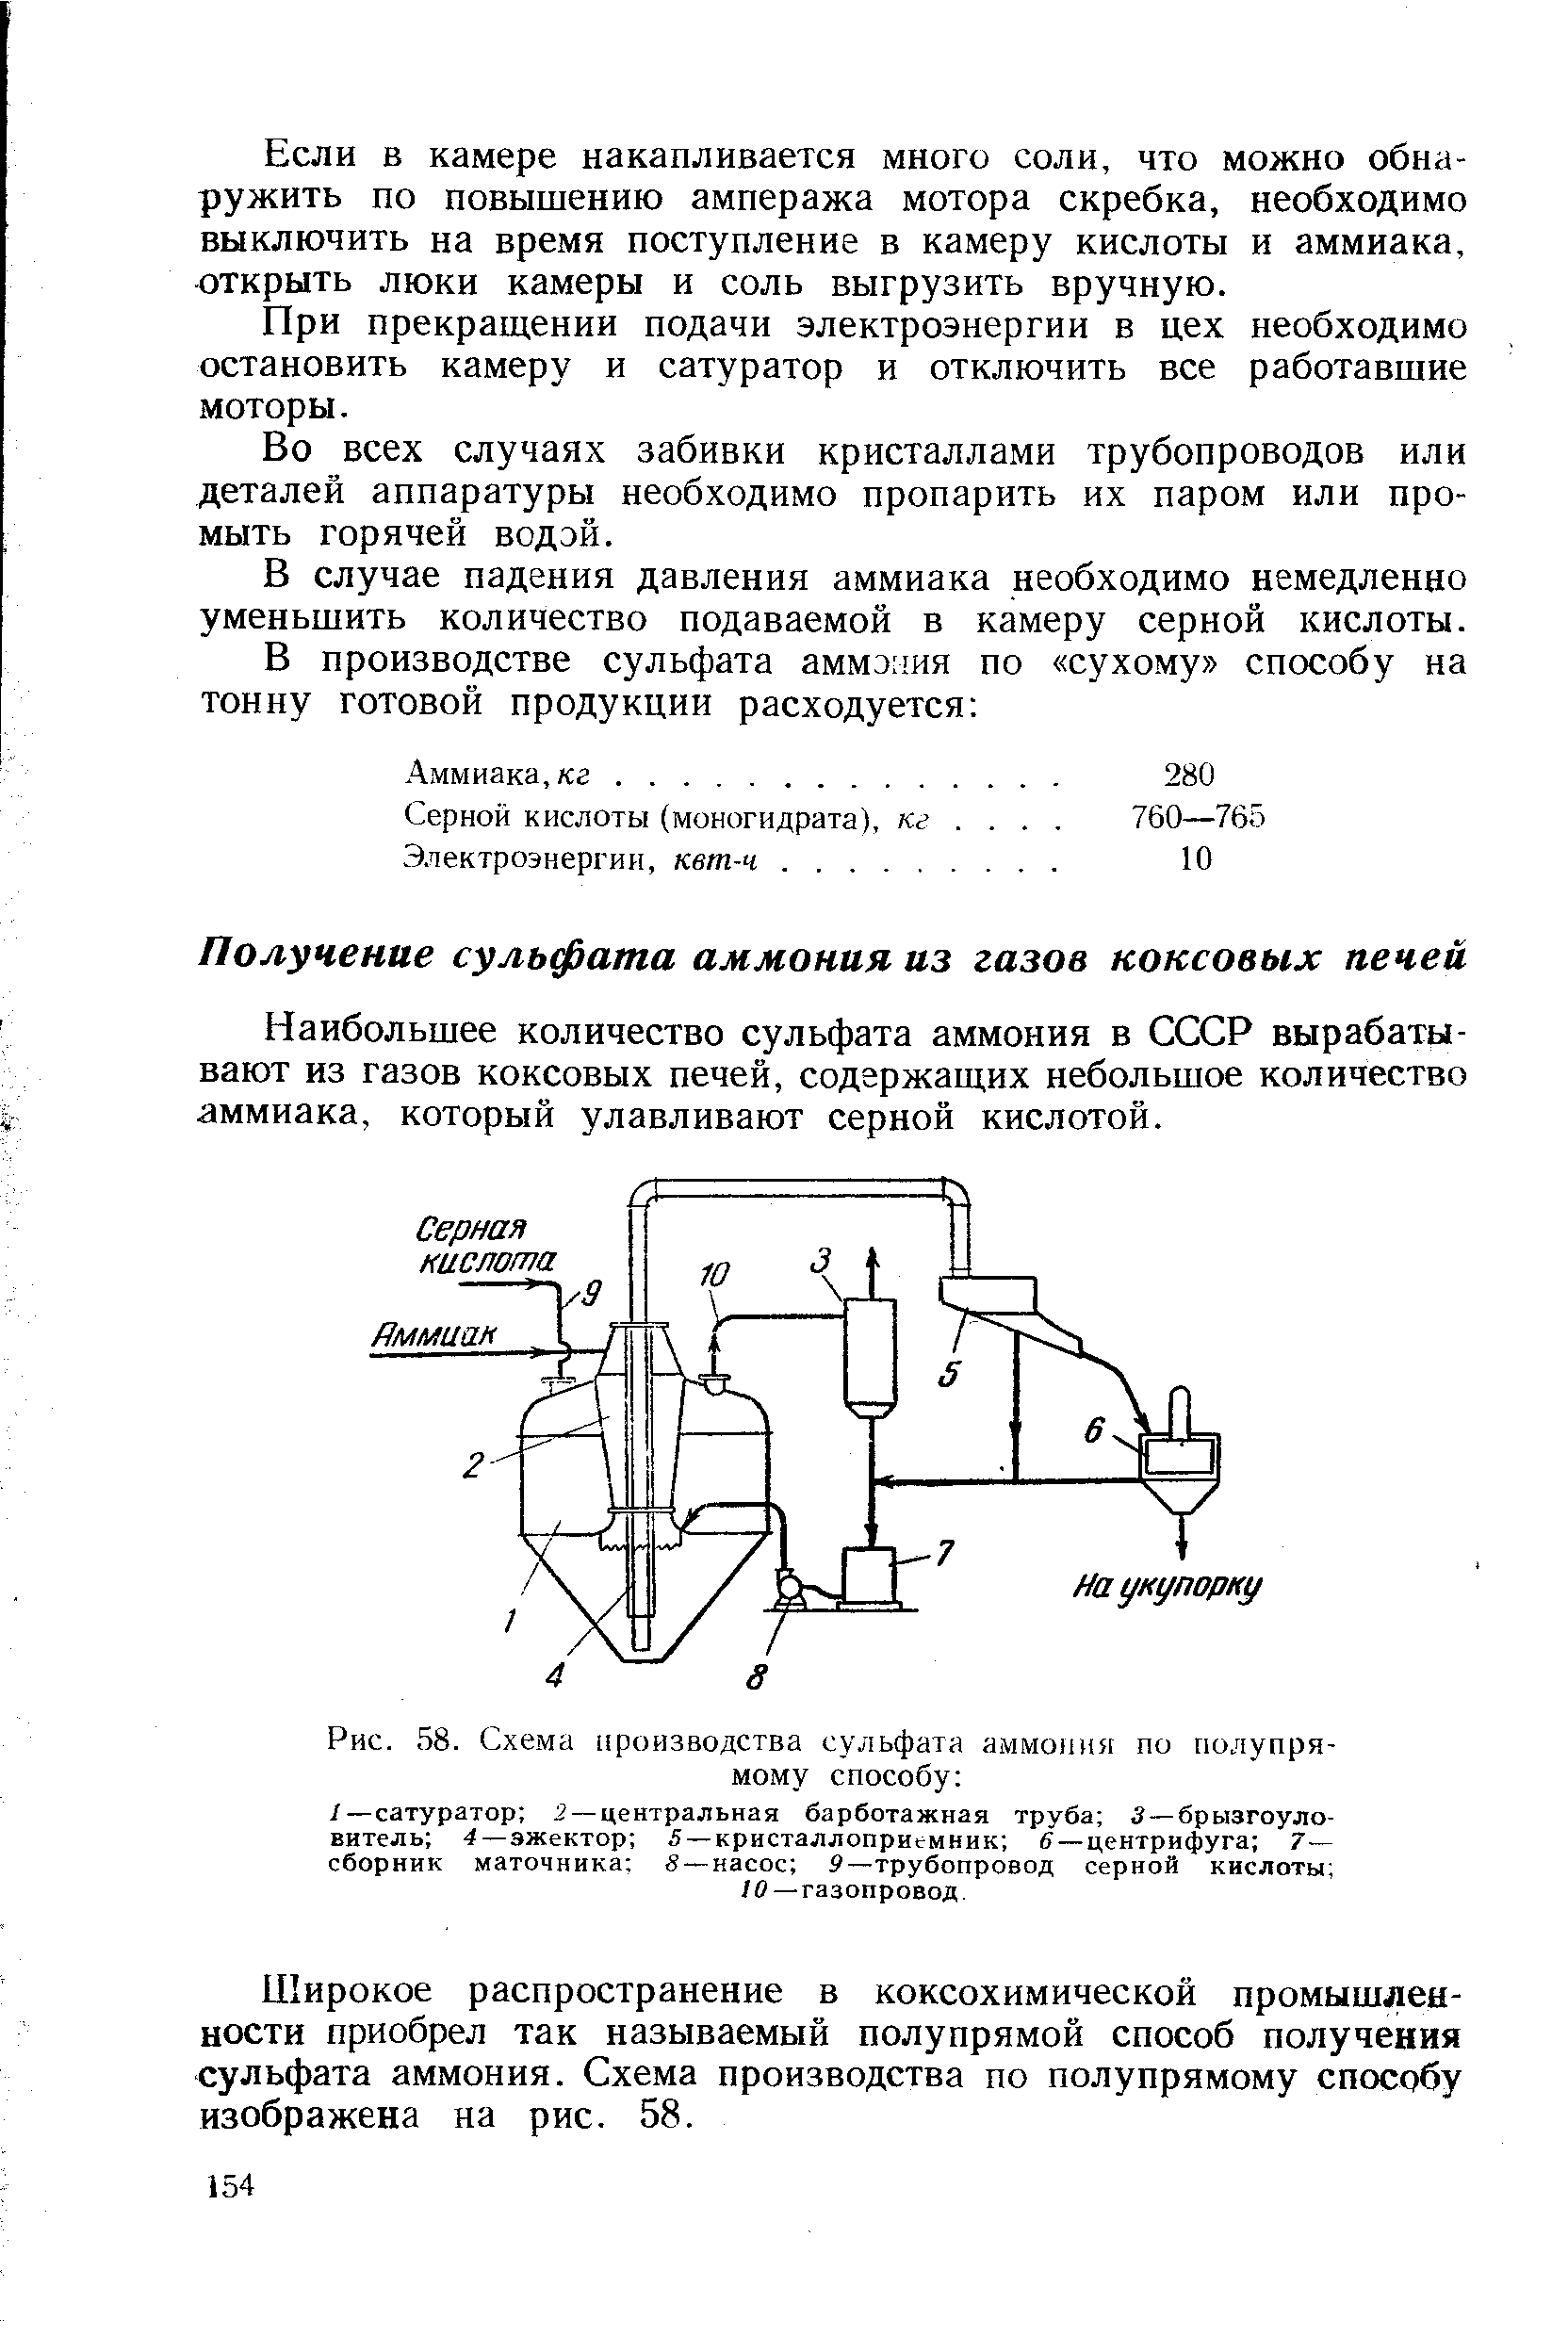 Наибольшее количество сульфата аммония в СССР вырабатывают из газов коксовых печей, содержащих небольшое количество аммиака, который улавливают серной кислотой.